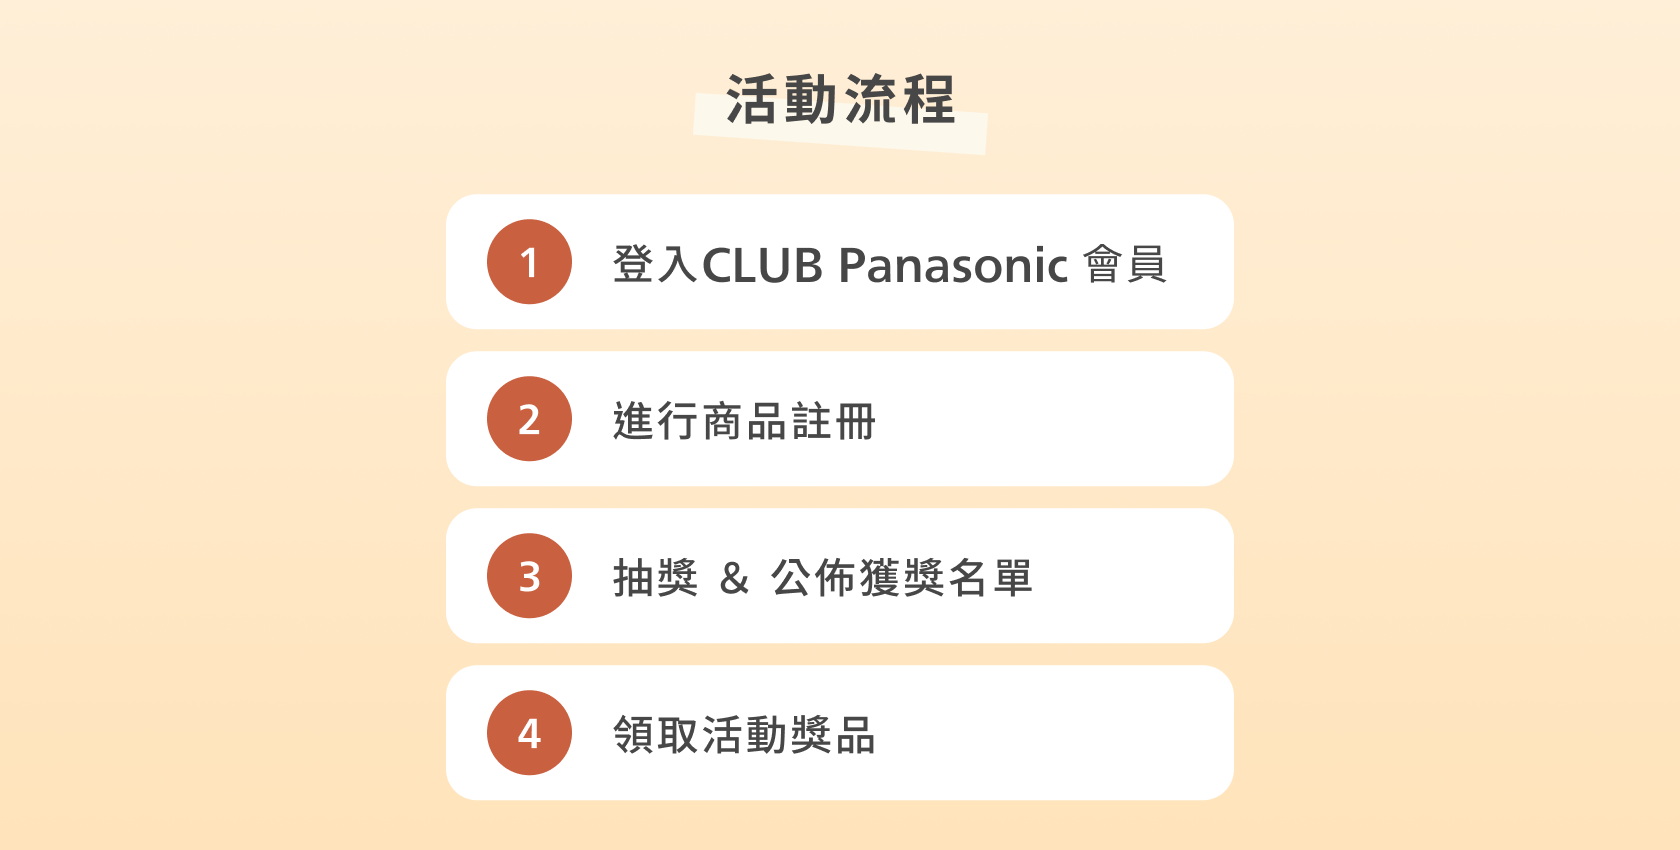 CLUB Panasonic秋季註冊商品抽9490元空氣清淨機！一起完成任務發掘美好～